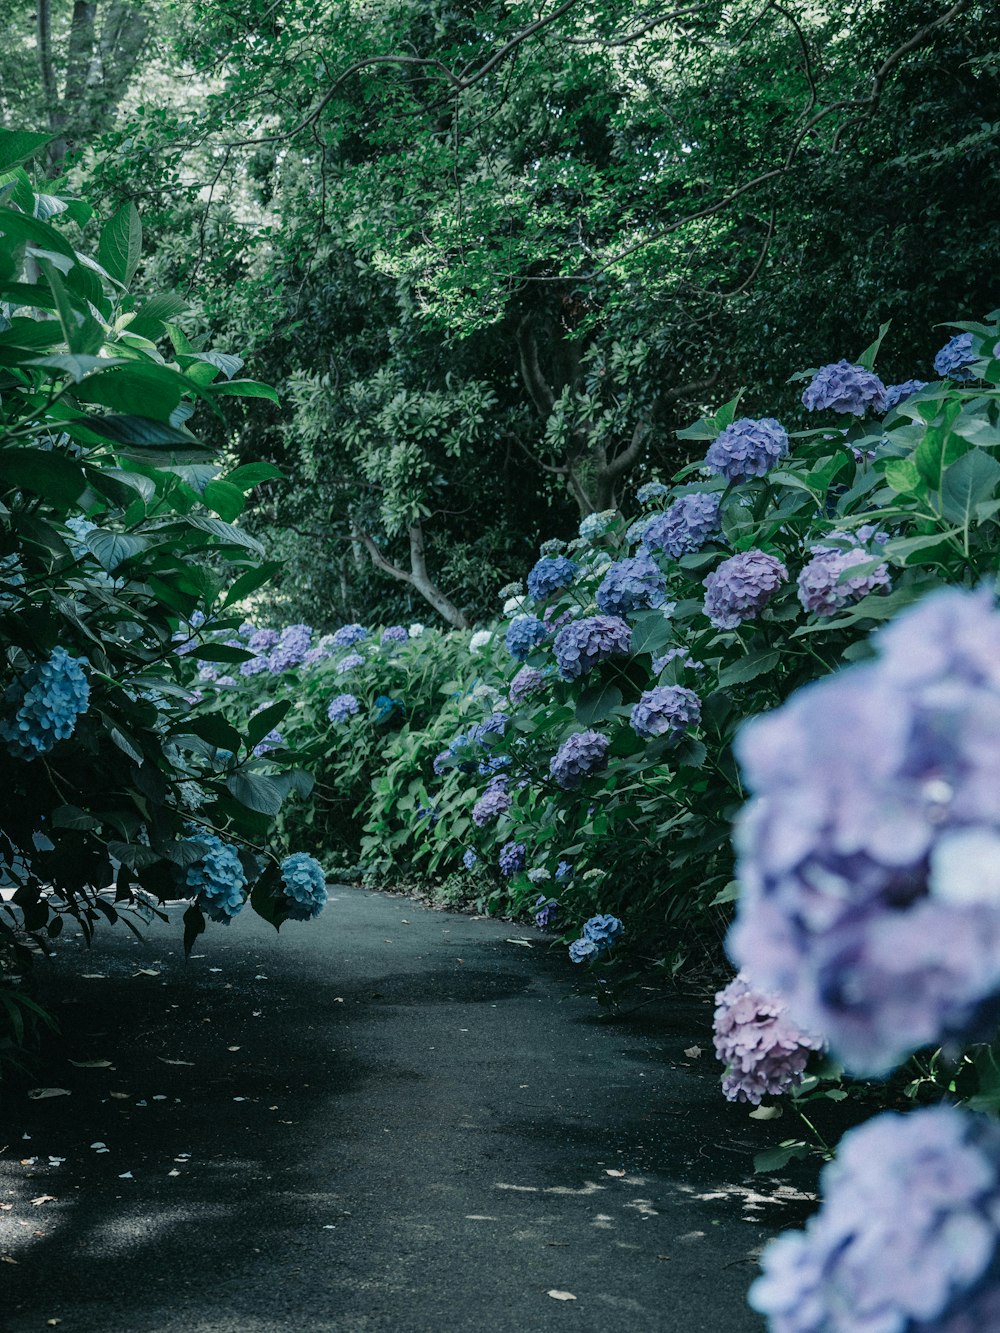 Un sentier bordé de nombreuses fleurs violettes et bleues